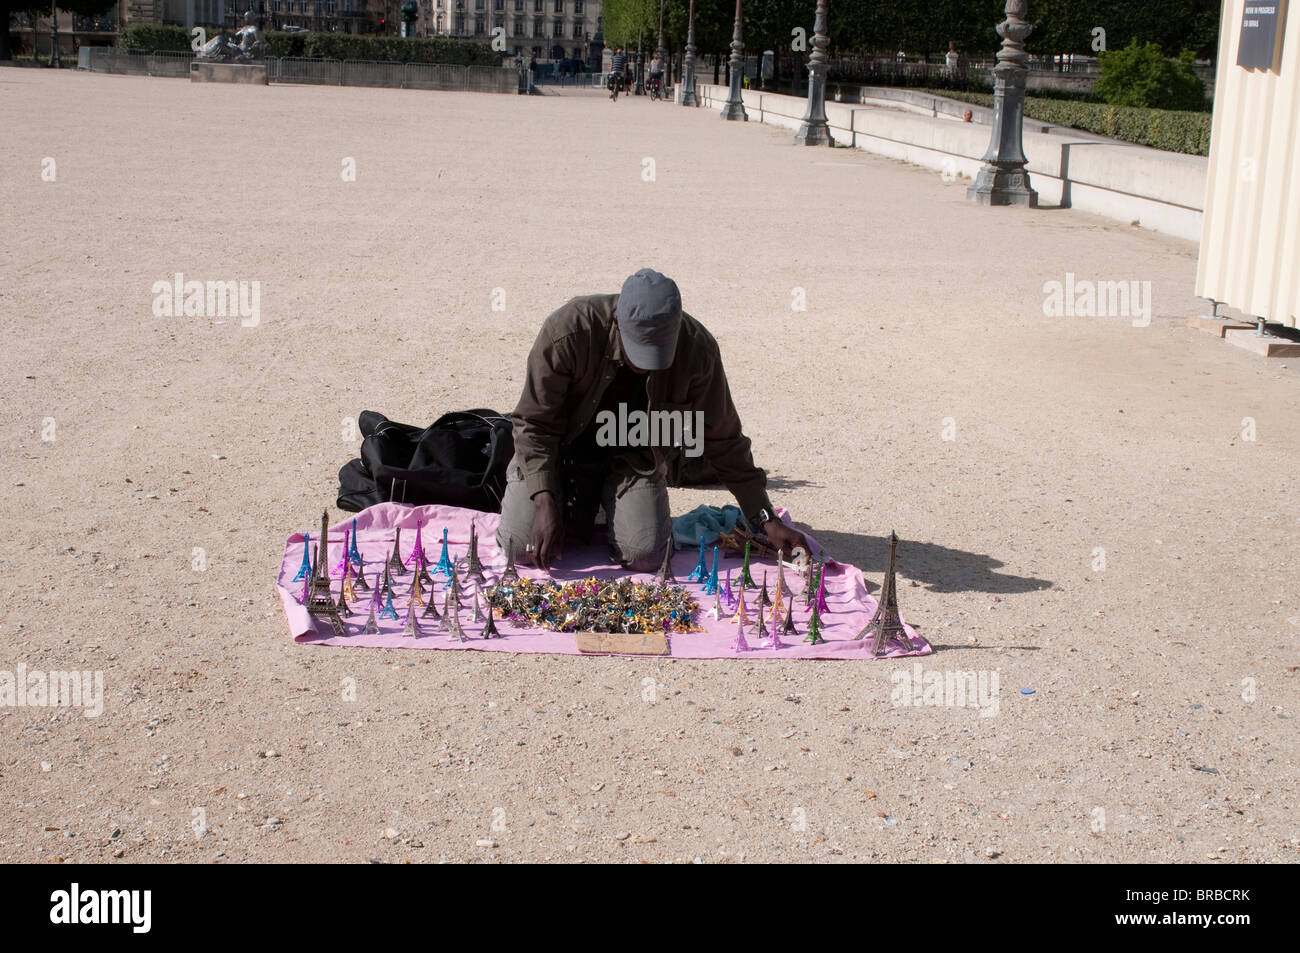 Man selling Eiffel Tower souvenirs, Jardin des Tuileries, Paris, France Stock Photo